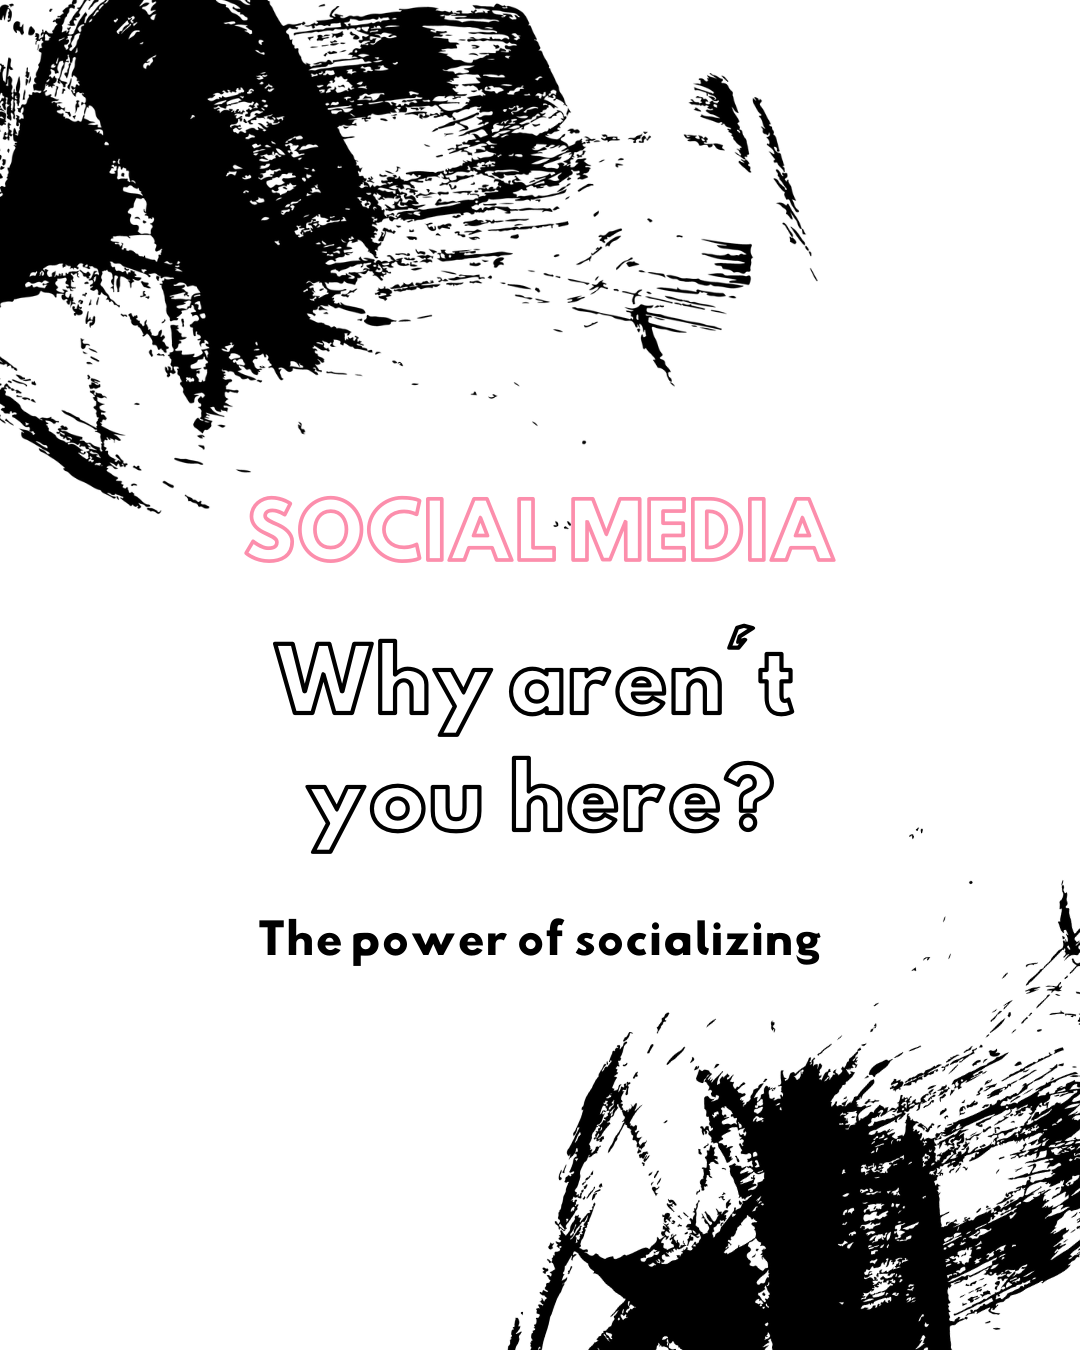 The Power of Socializing on Social Media